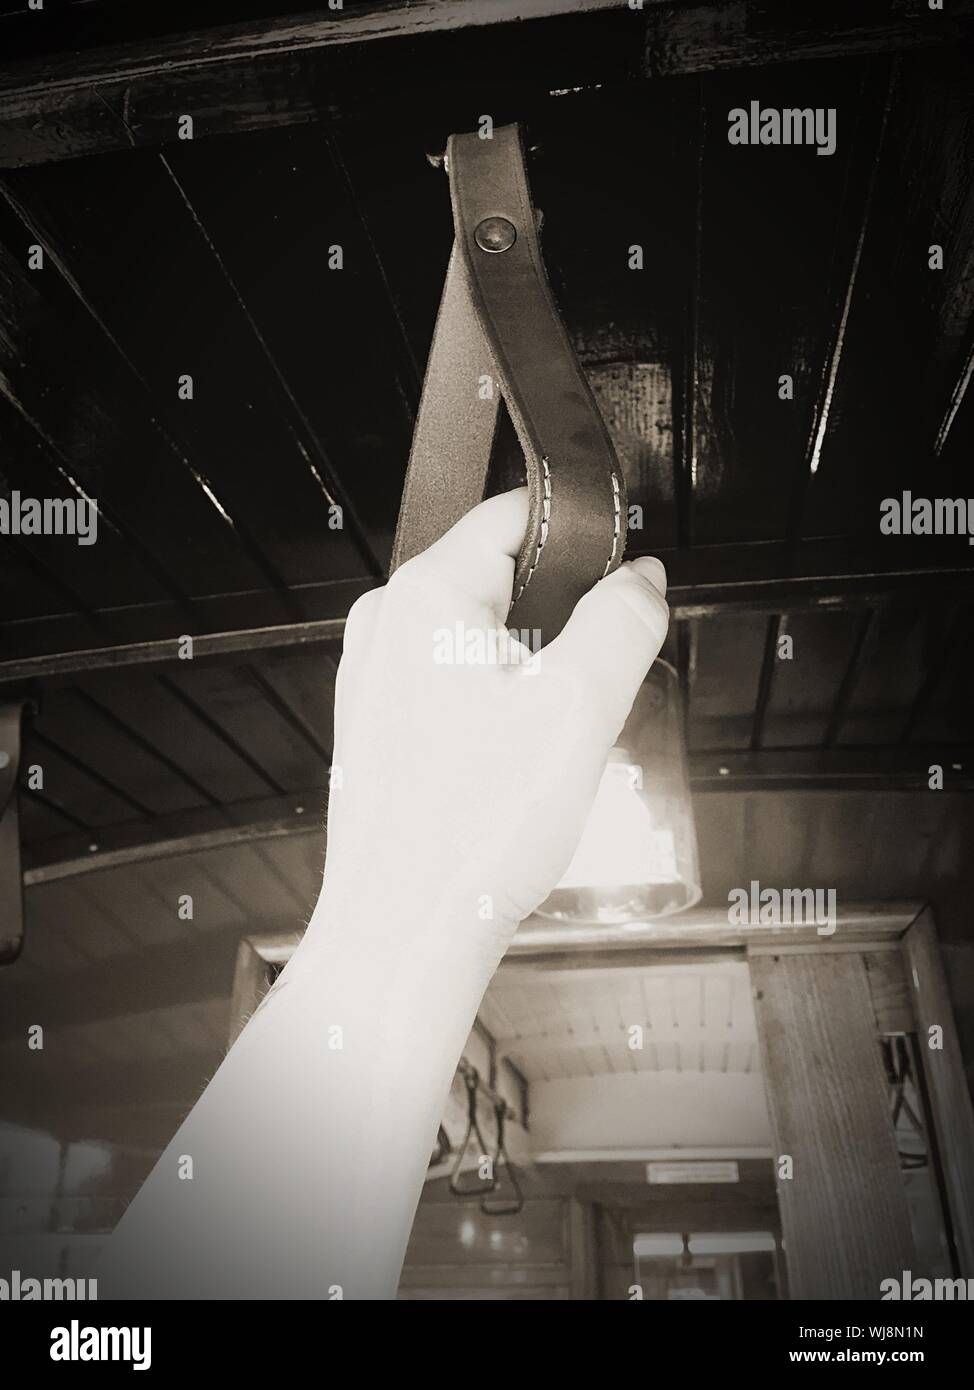 Mano alla cintura immagini e fotografie stock ad alta risoluzione - Alamy